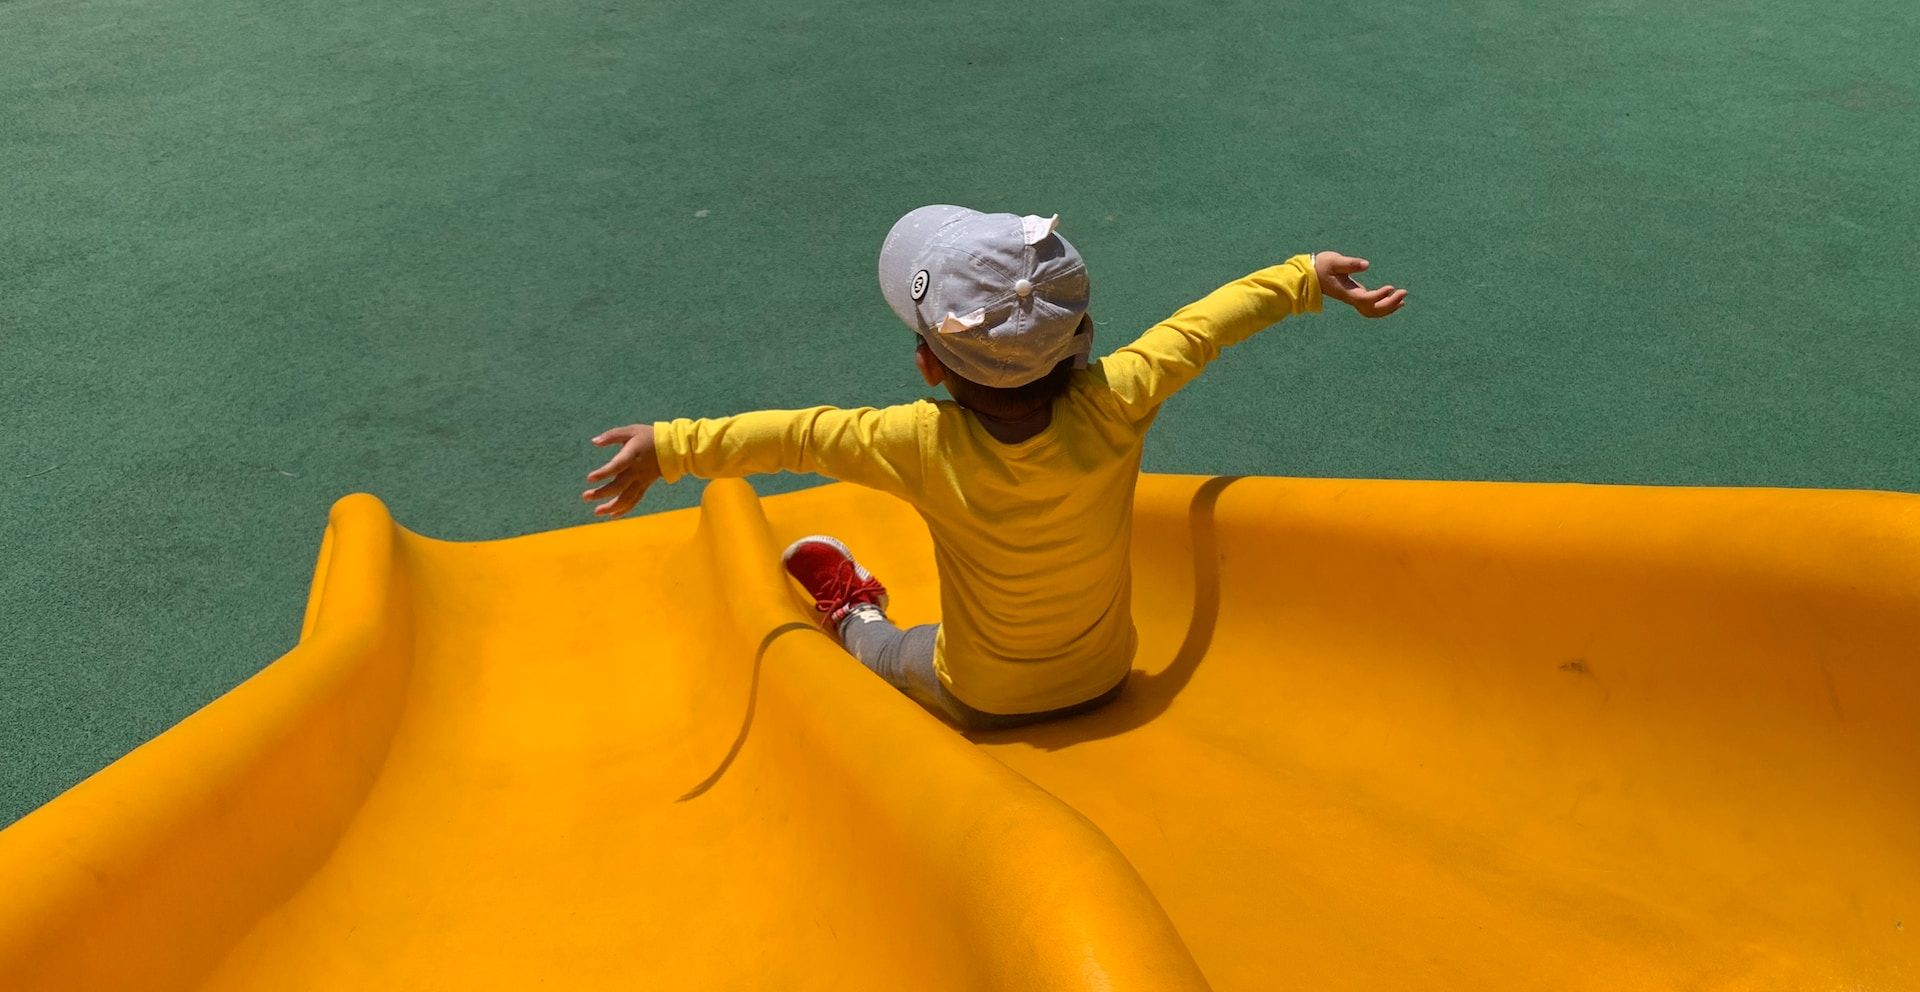 Kid on a slide